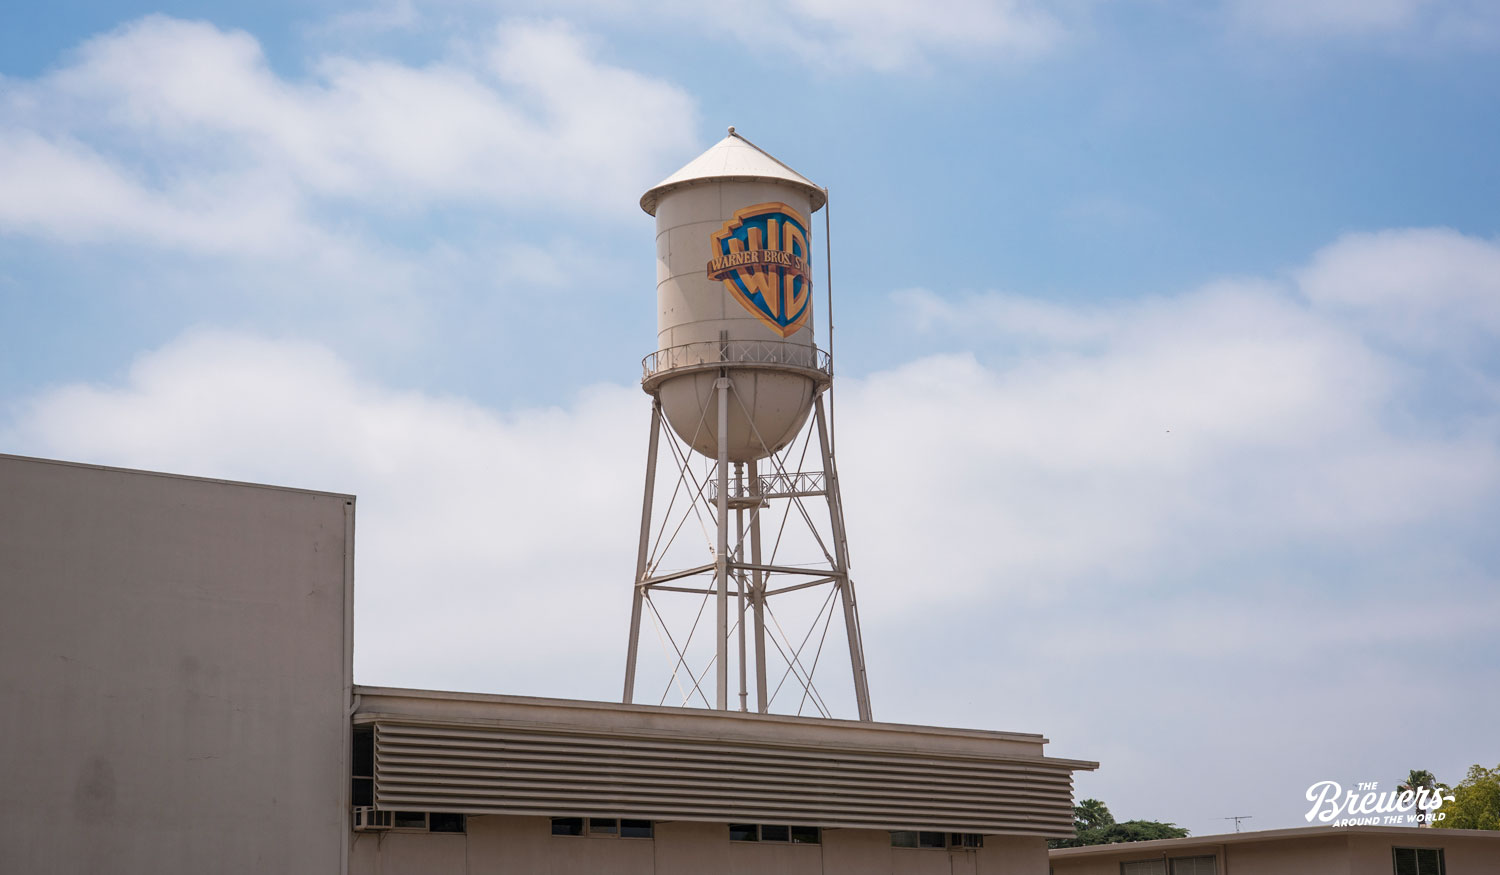 Der Wasserturm ist das weltbekannte Wahrzeichen der Warner Bros Studios